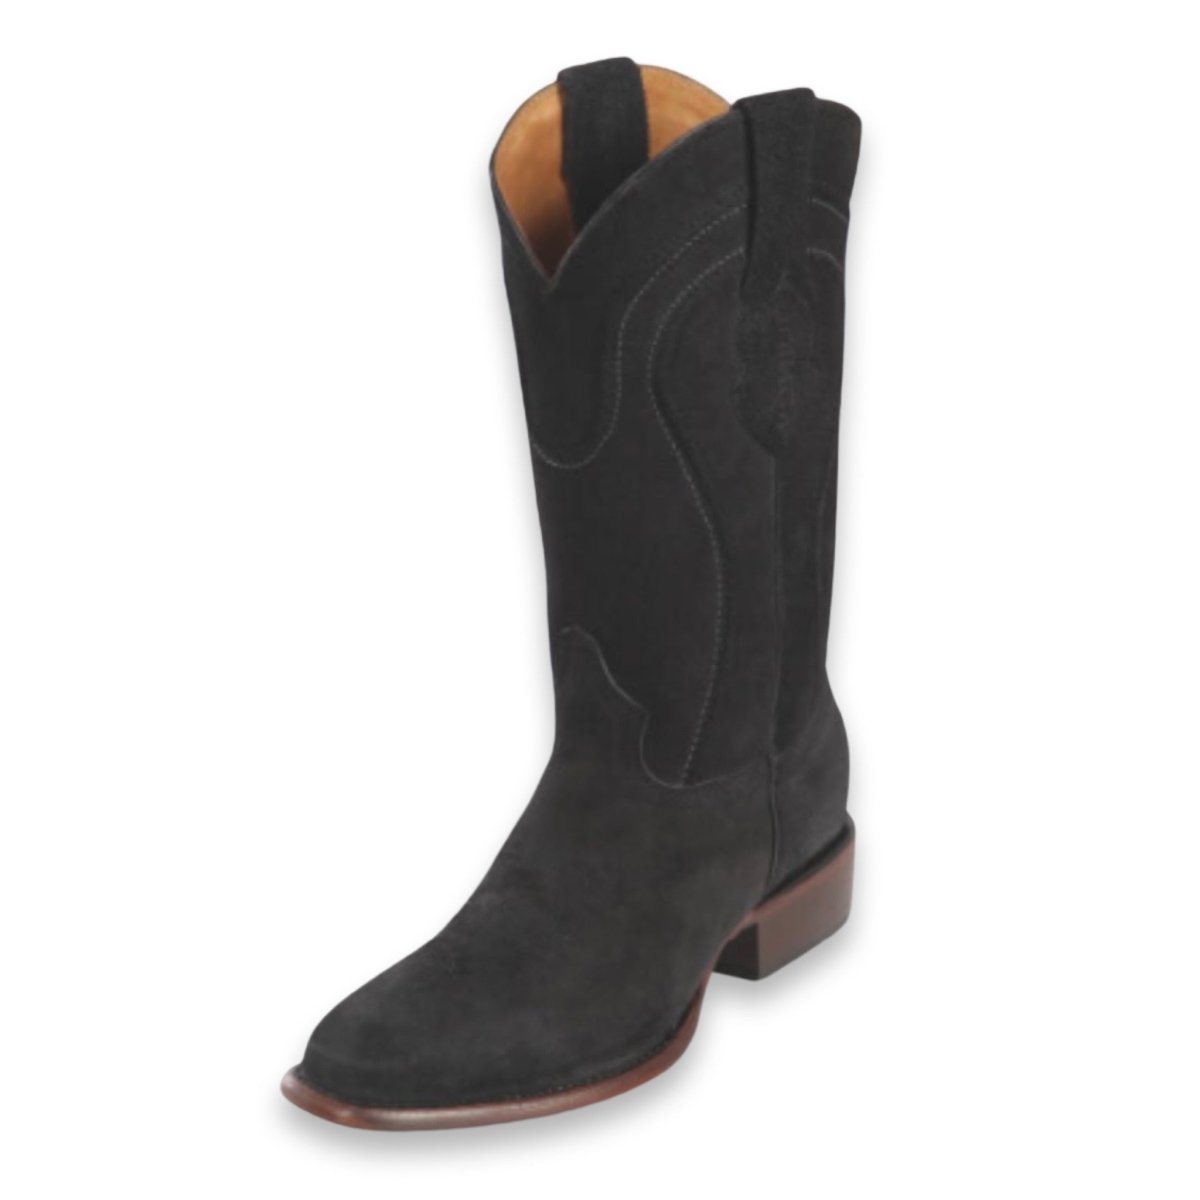 Men's Suede Leather Rodeo Boot - CharroAzteca.com